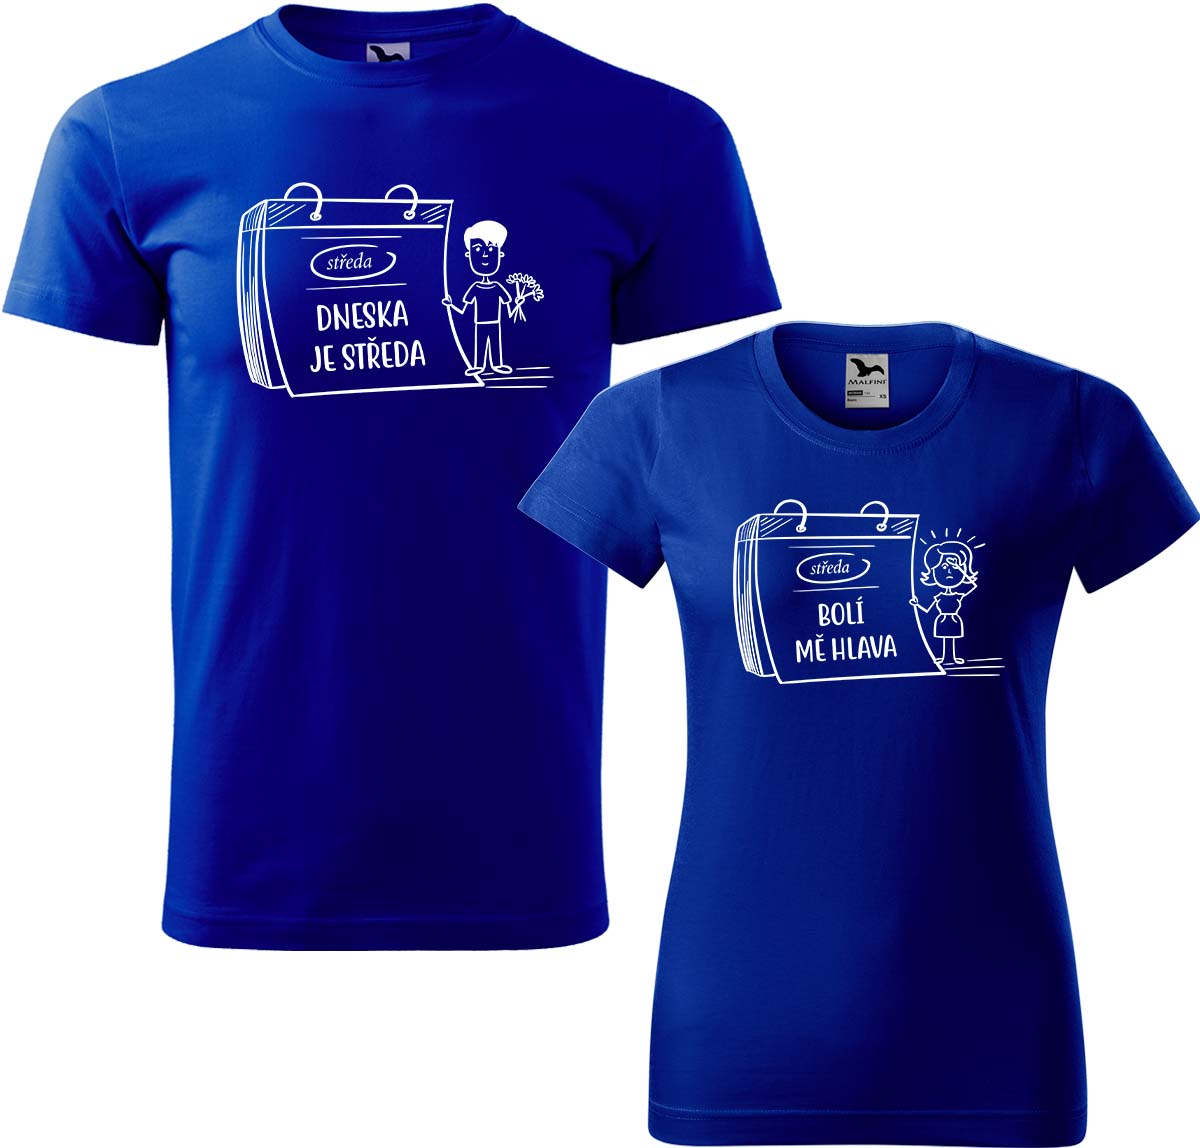 Trička pro páry - Dneska je středa Barva: Královská modrá (05), Velikost dámské tričko: M, Velikost pánské tričko: XL